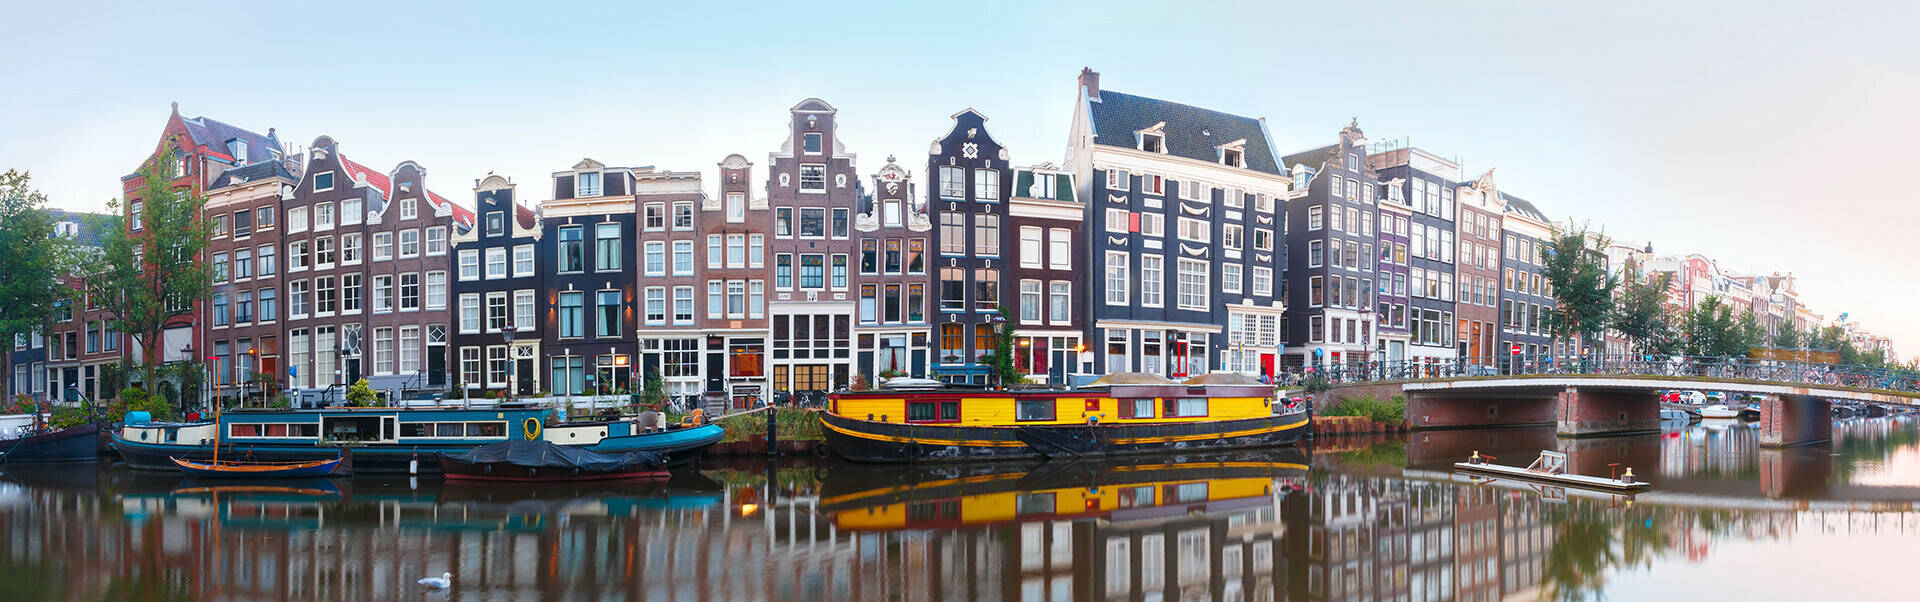 Panoramafoto van een gracht in Amsterdam